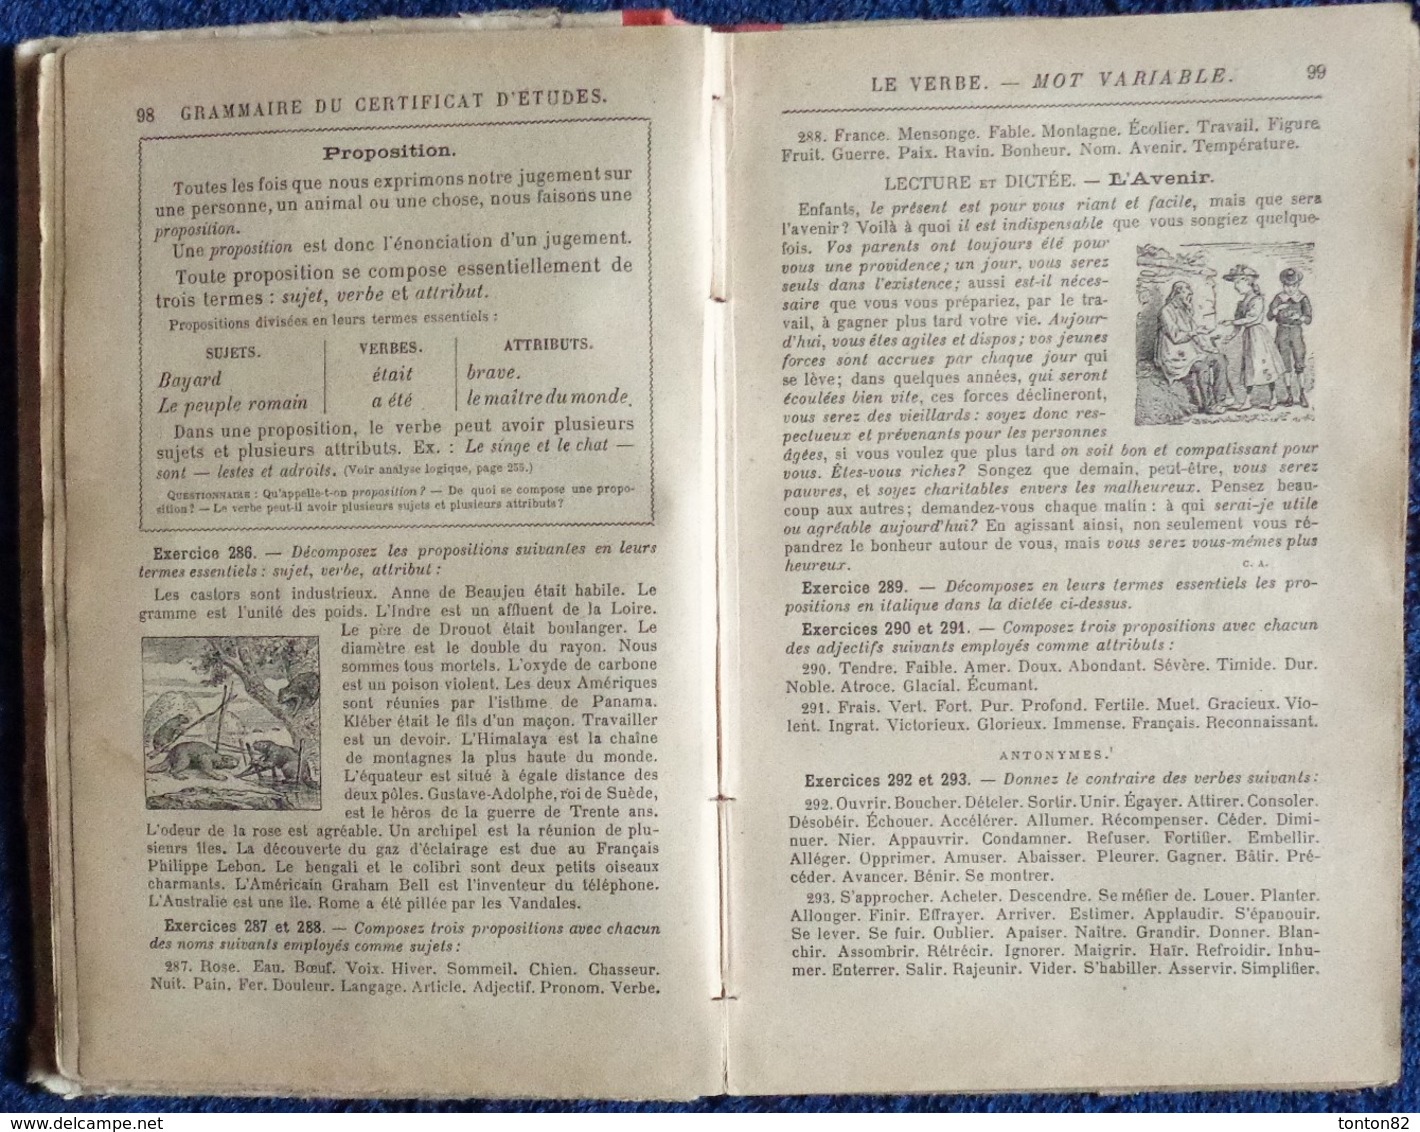 Claude Augé - Grammaire du Certificat d'Études - Livre de l'Élève - Librairie Larousse .